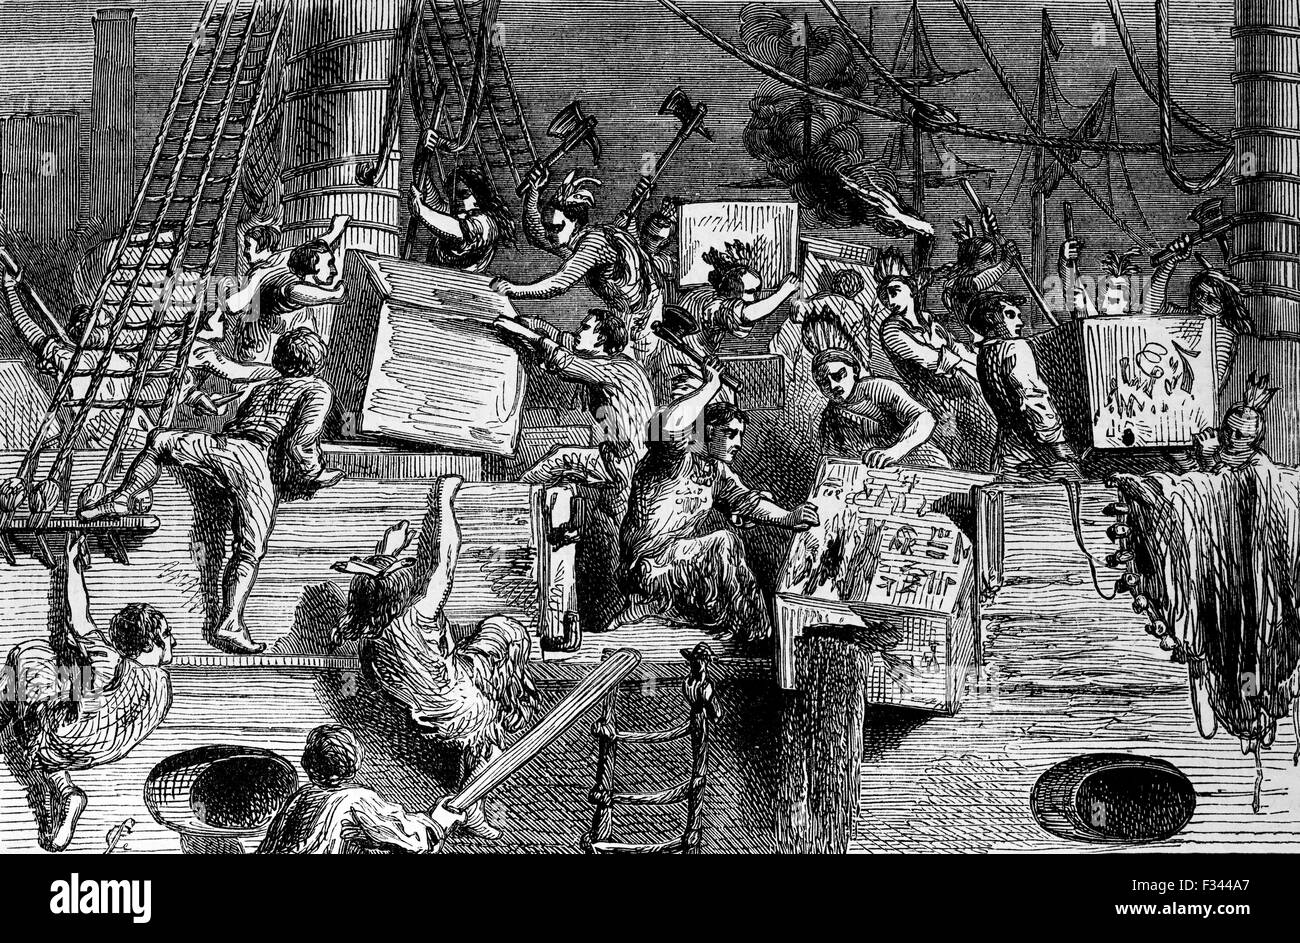 El control de la India oriental COMPANYThe Boston Tea Party fue una protesta política por los hijos de la Libertad en Boston, en la colonia británica de Massachusetts, contra el gobierno británico y la East India Company que controlaba todo el té importado en las colonias. El 16 de diciembre de 1773, después de que funcionarios en Boston se negó a devolver tres embarques de té gravadas a Gran Bretaña, un grupo de colonos subieron a los barcos y destruyeron el té por tirar en el puerto de Boston. Foto de stock